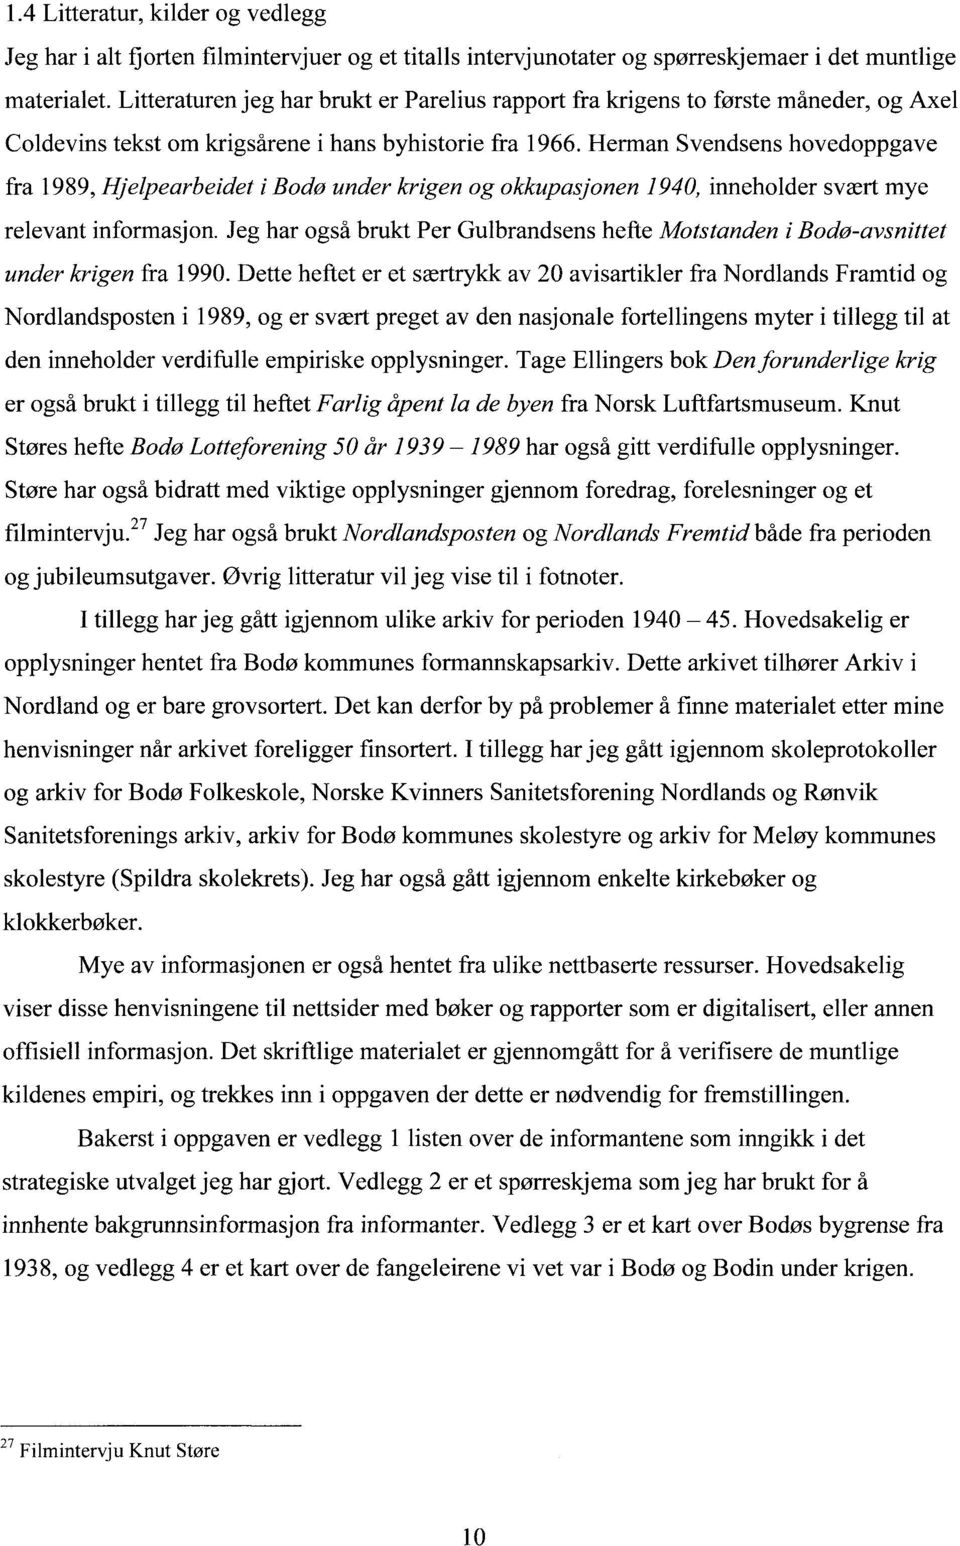 Herman Svendsens hovedoppgave fra 1989, Hjelpearbeidet i Bodø under krigen og okkupasjonen 1940, inneholder svært mye relevant informasjon.